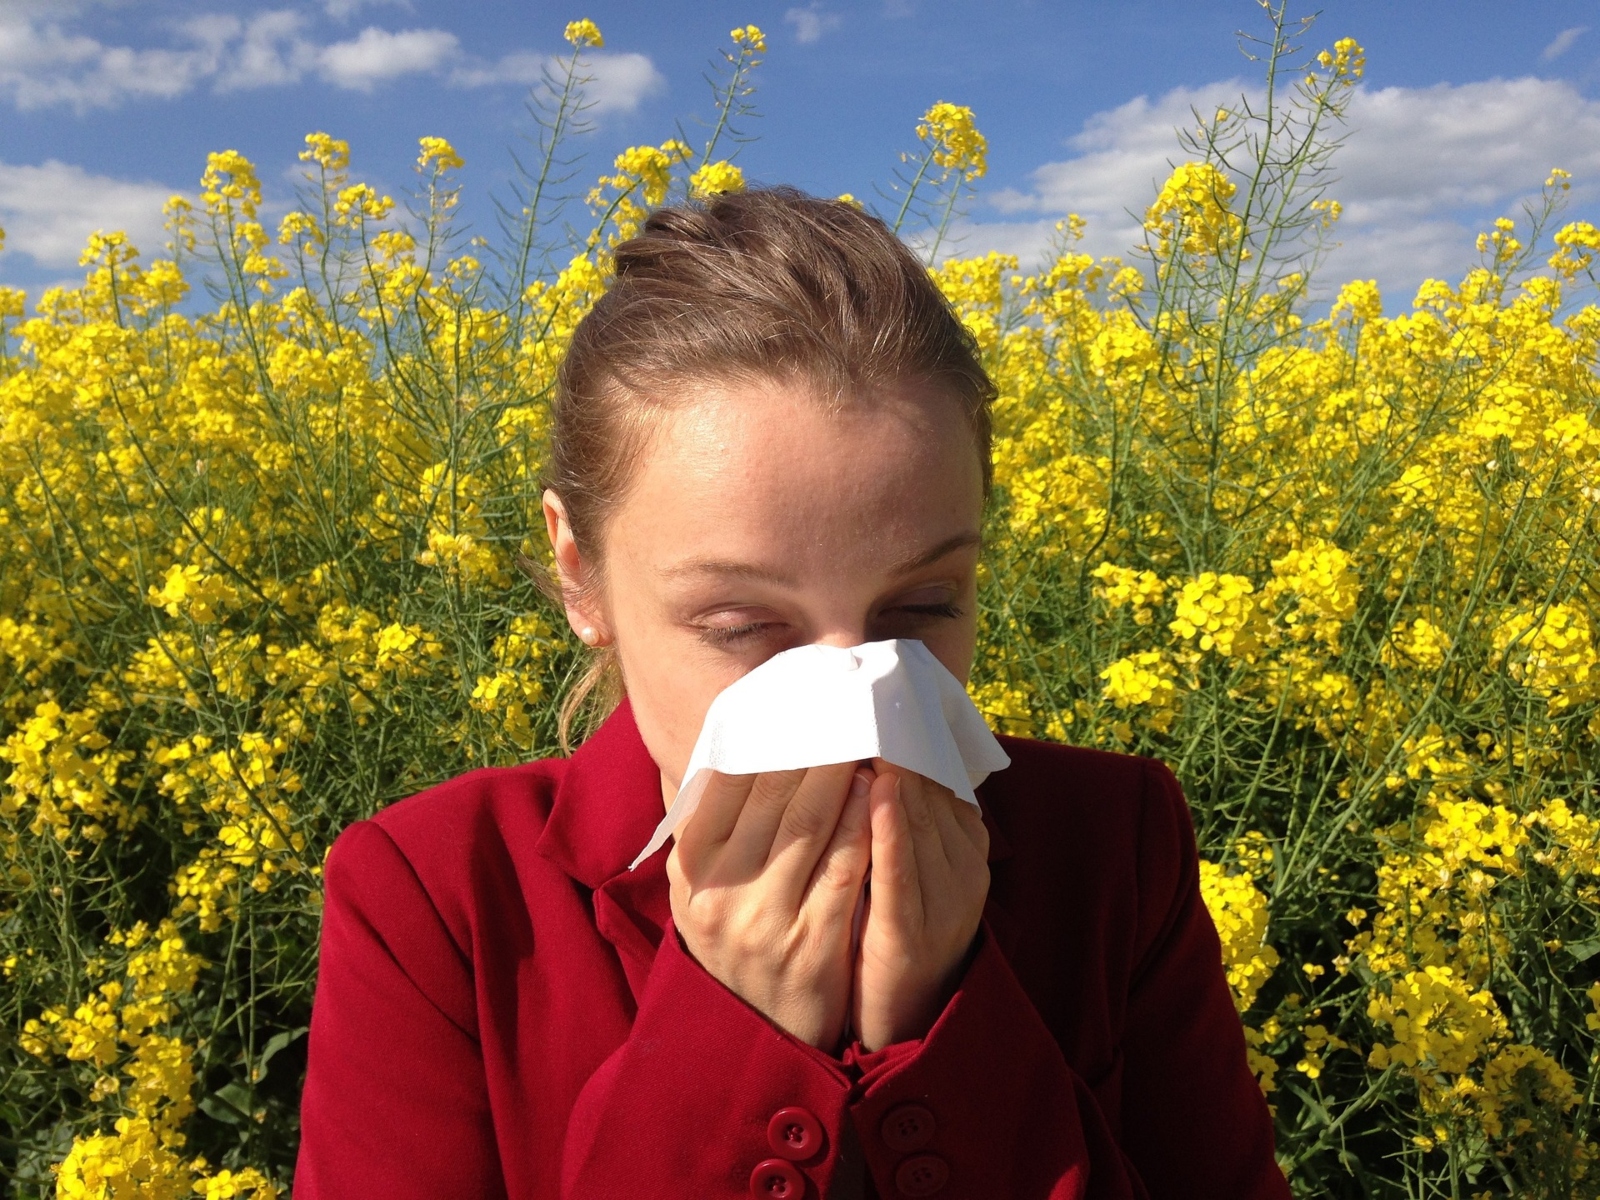 Αλλεργίες: Οι παιδικές αλλεργίες είναι παροδικές ή διαρκούν για πάντα;